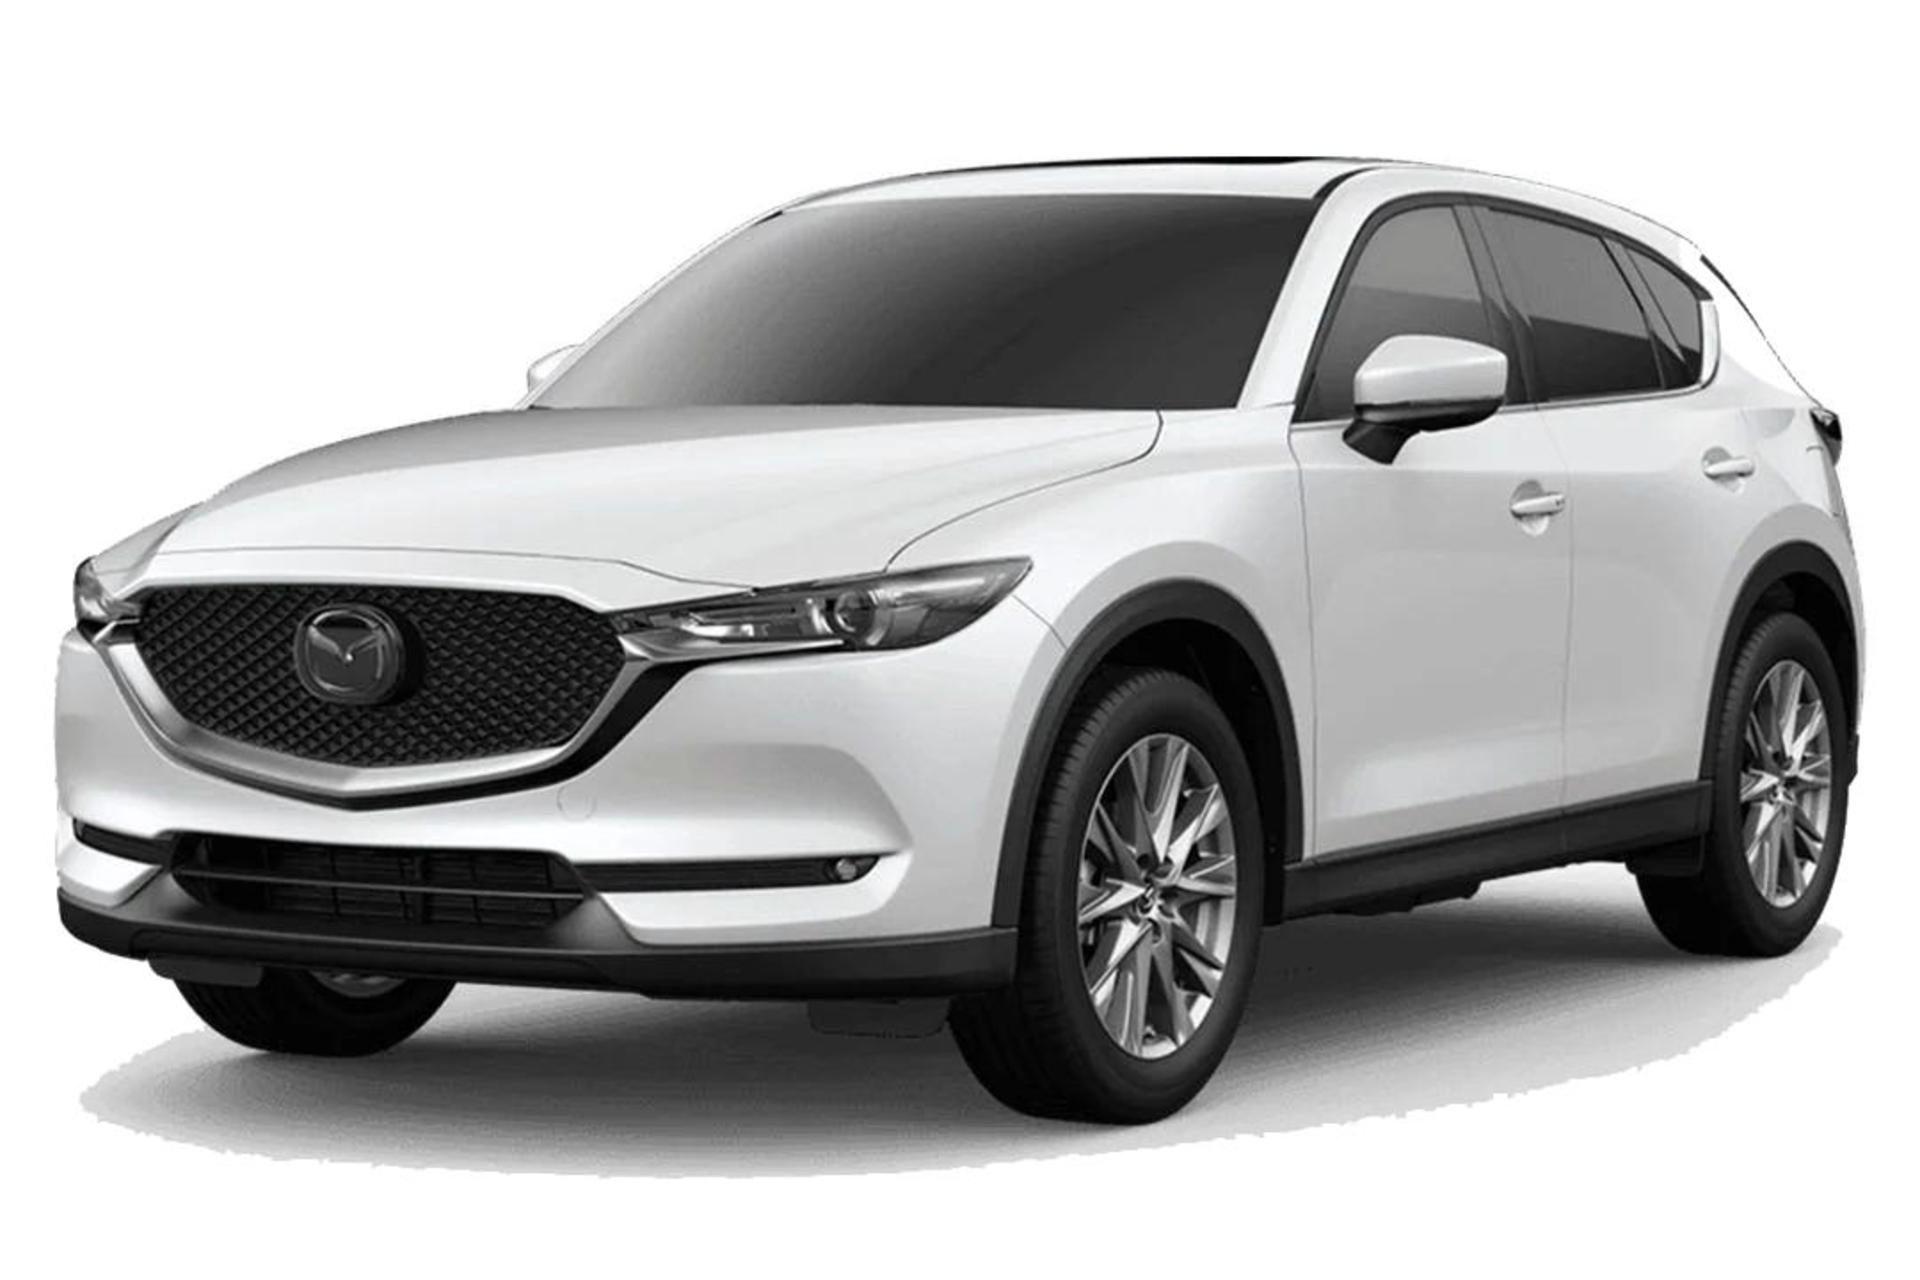 خودرو مزدا CX-5 مدل 2019 سفید / Mazda CX-5 2019